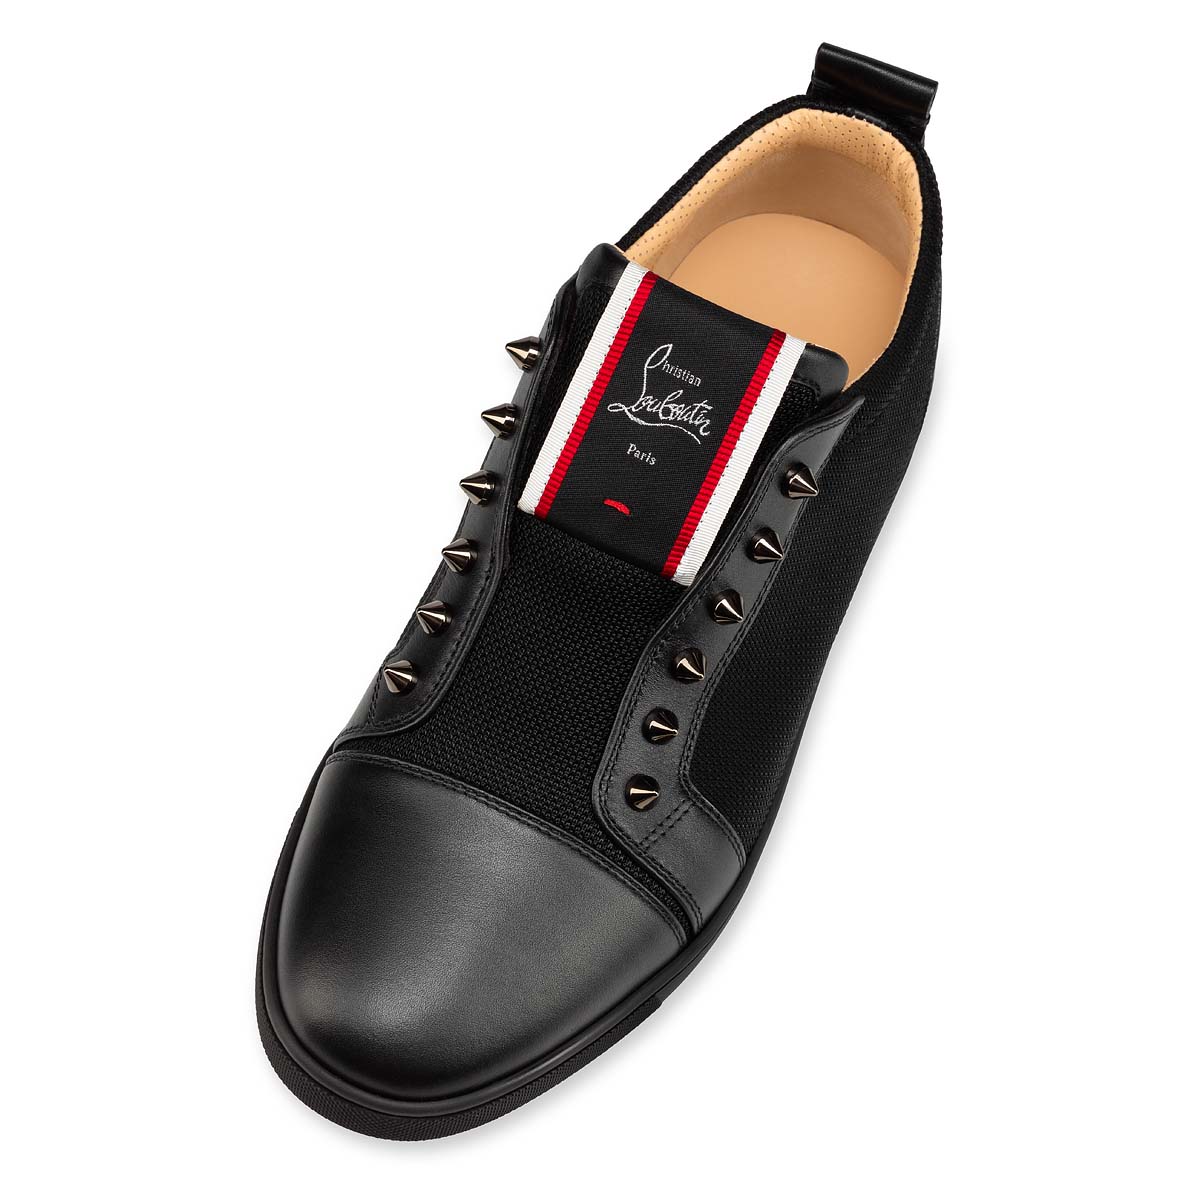 F.A.V FIQUE A VONTADE BLACK CALF - Shoes - Men - Christian Louboutin